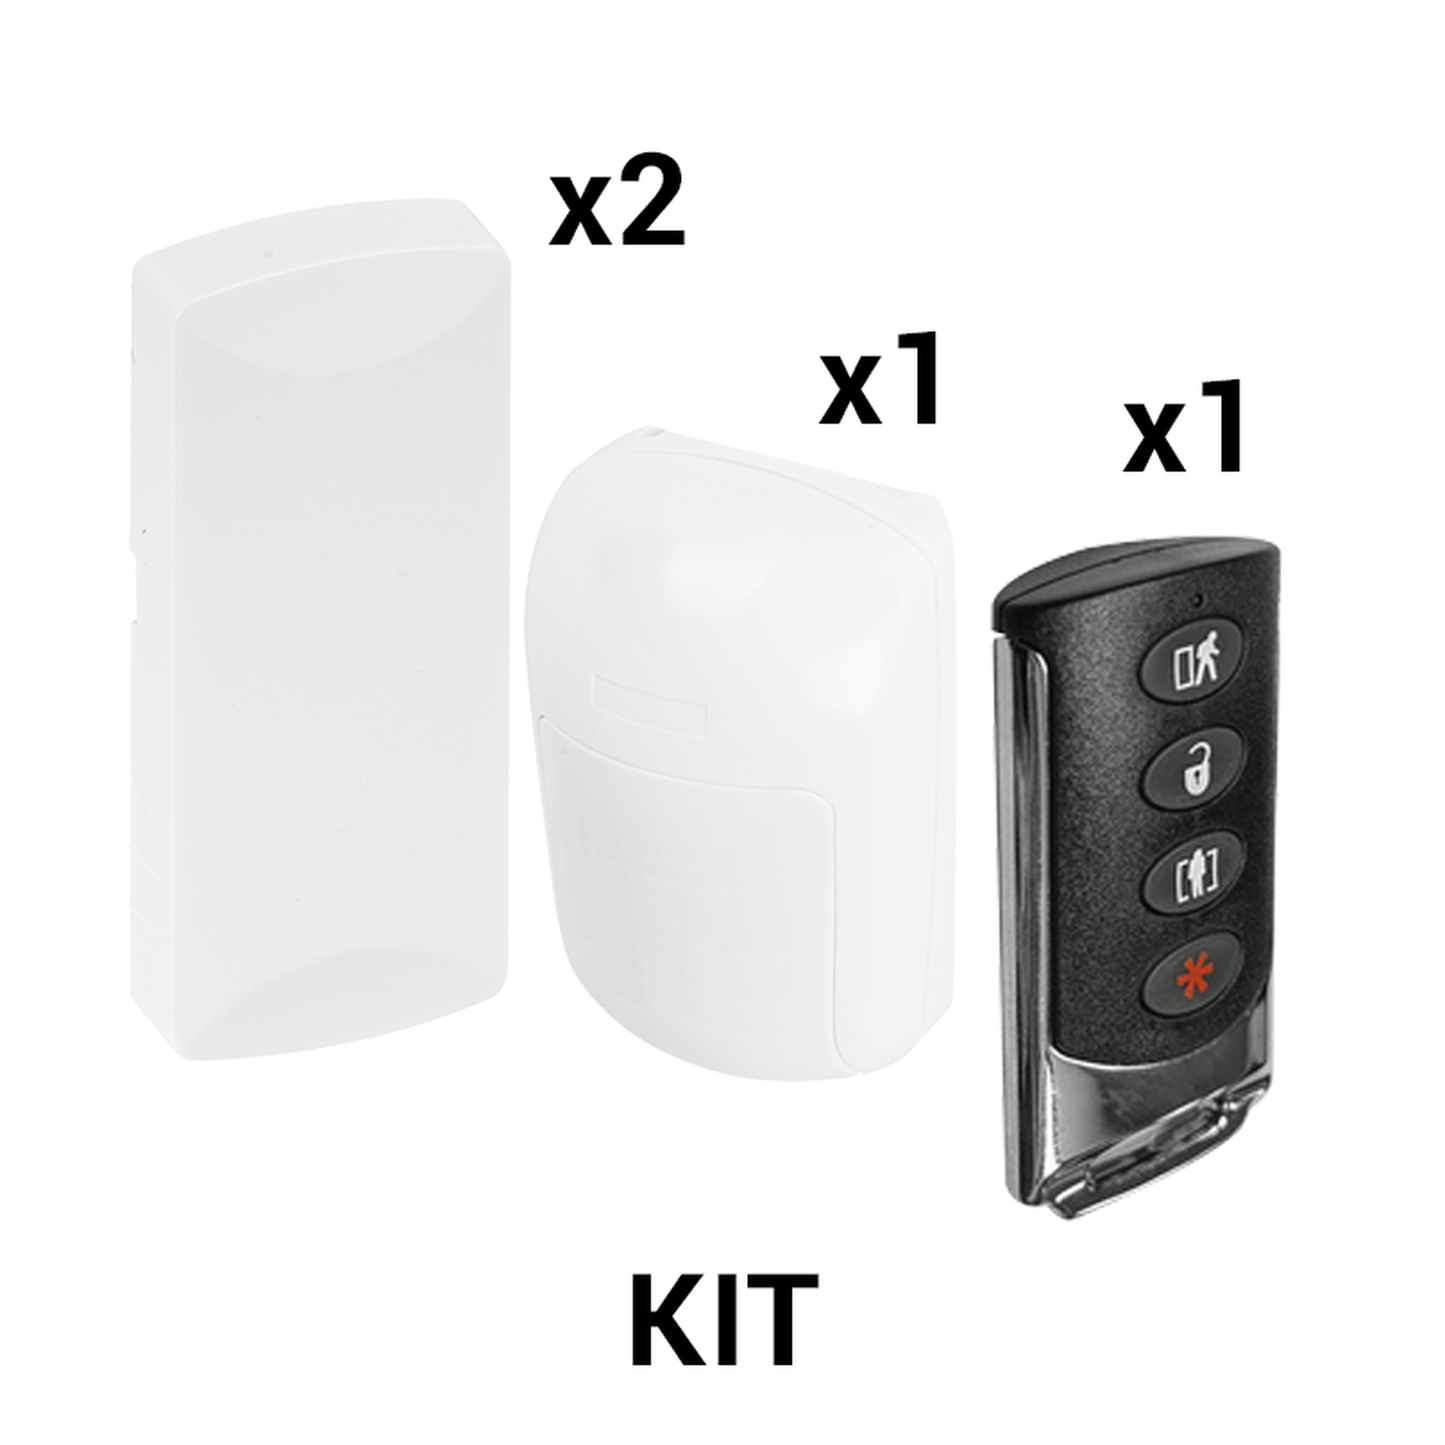 KIT Básico Sensores Inalámbricos - Incluye 2 Contactos Magnéticos, 1 PIR y 1 Llavero - Compatibles con Honeywell y PRO4GEN2